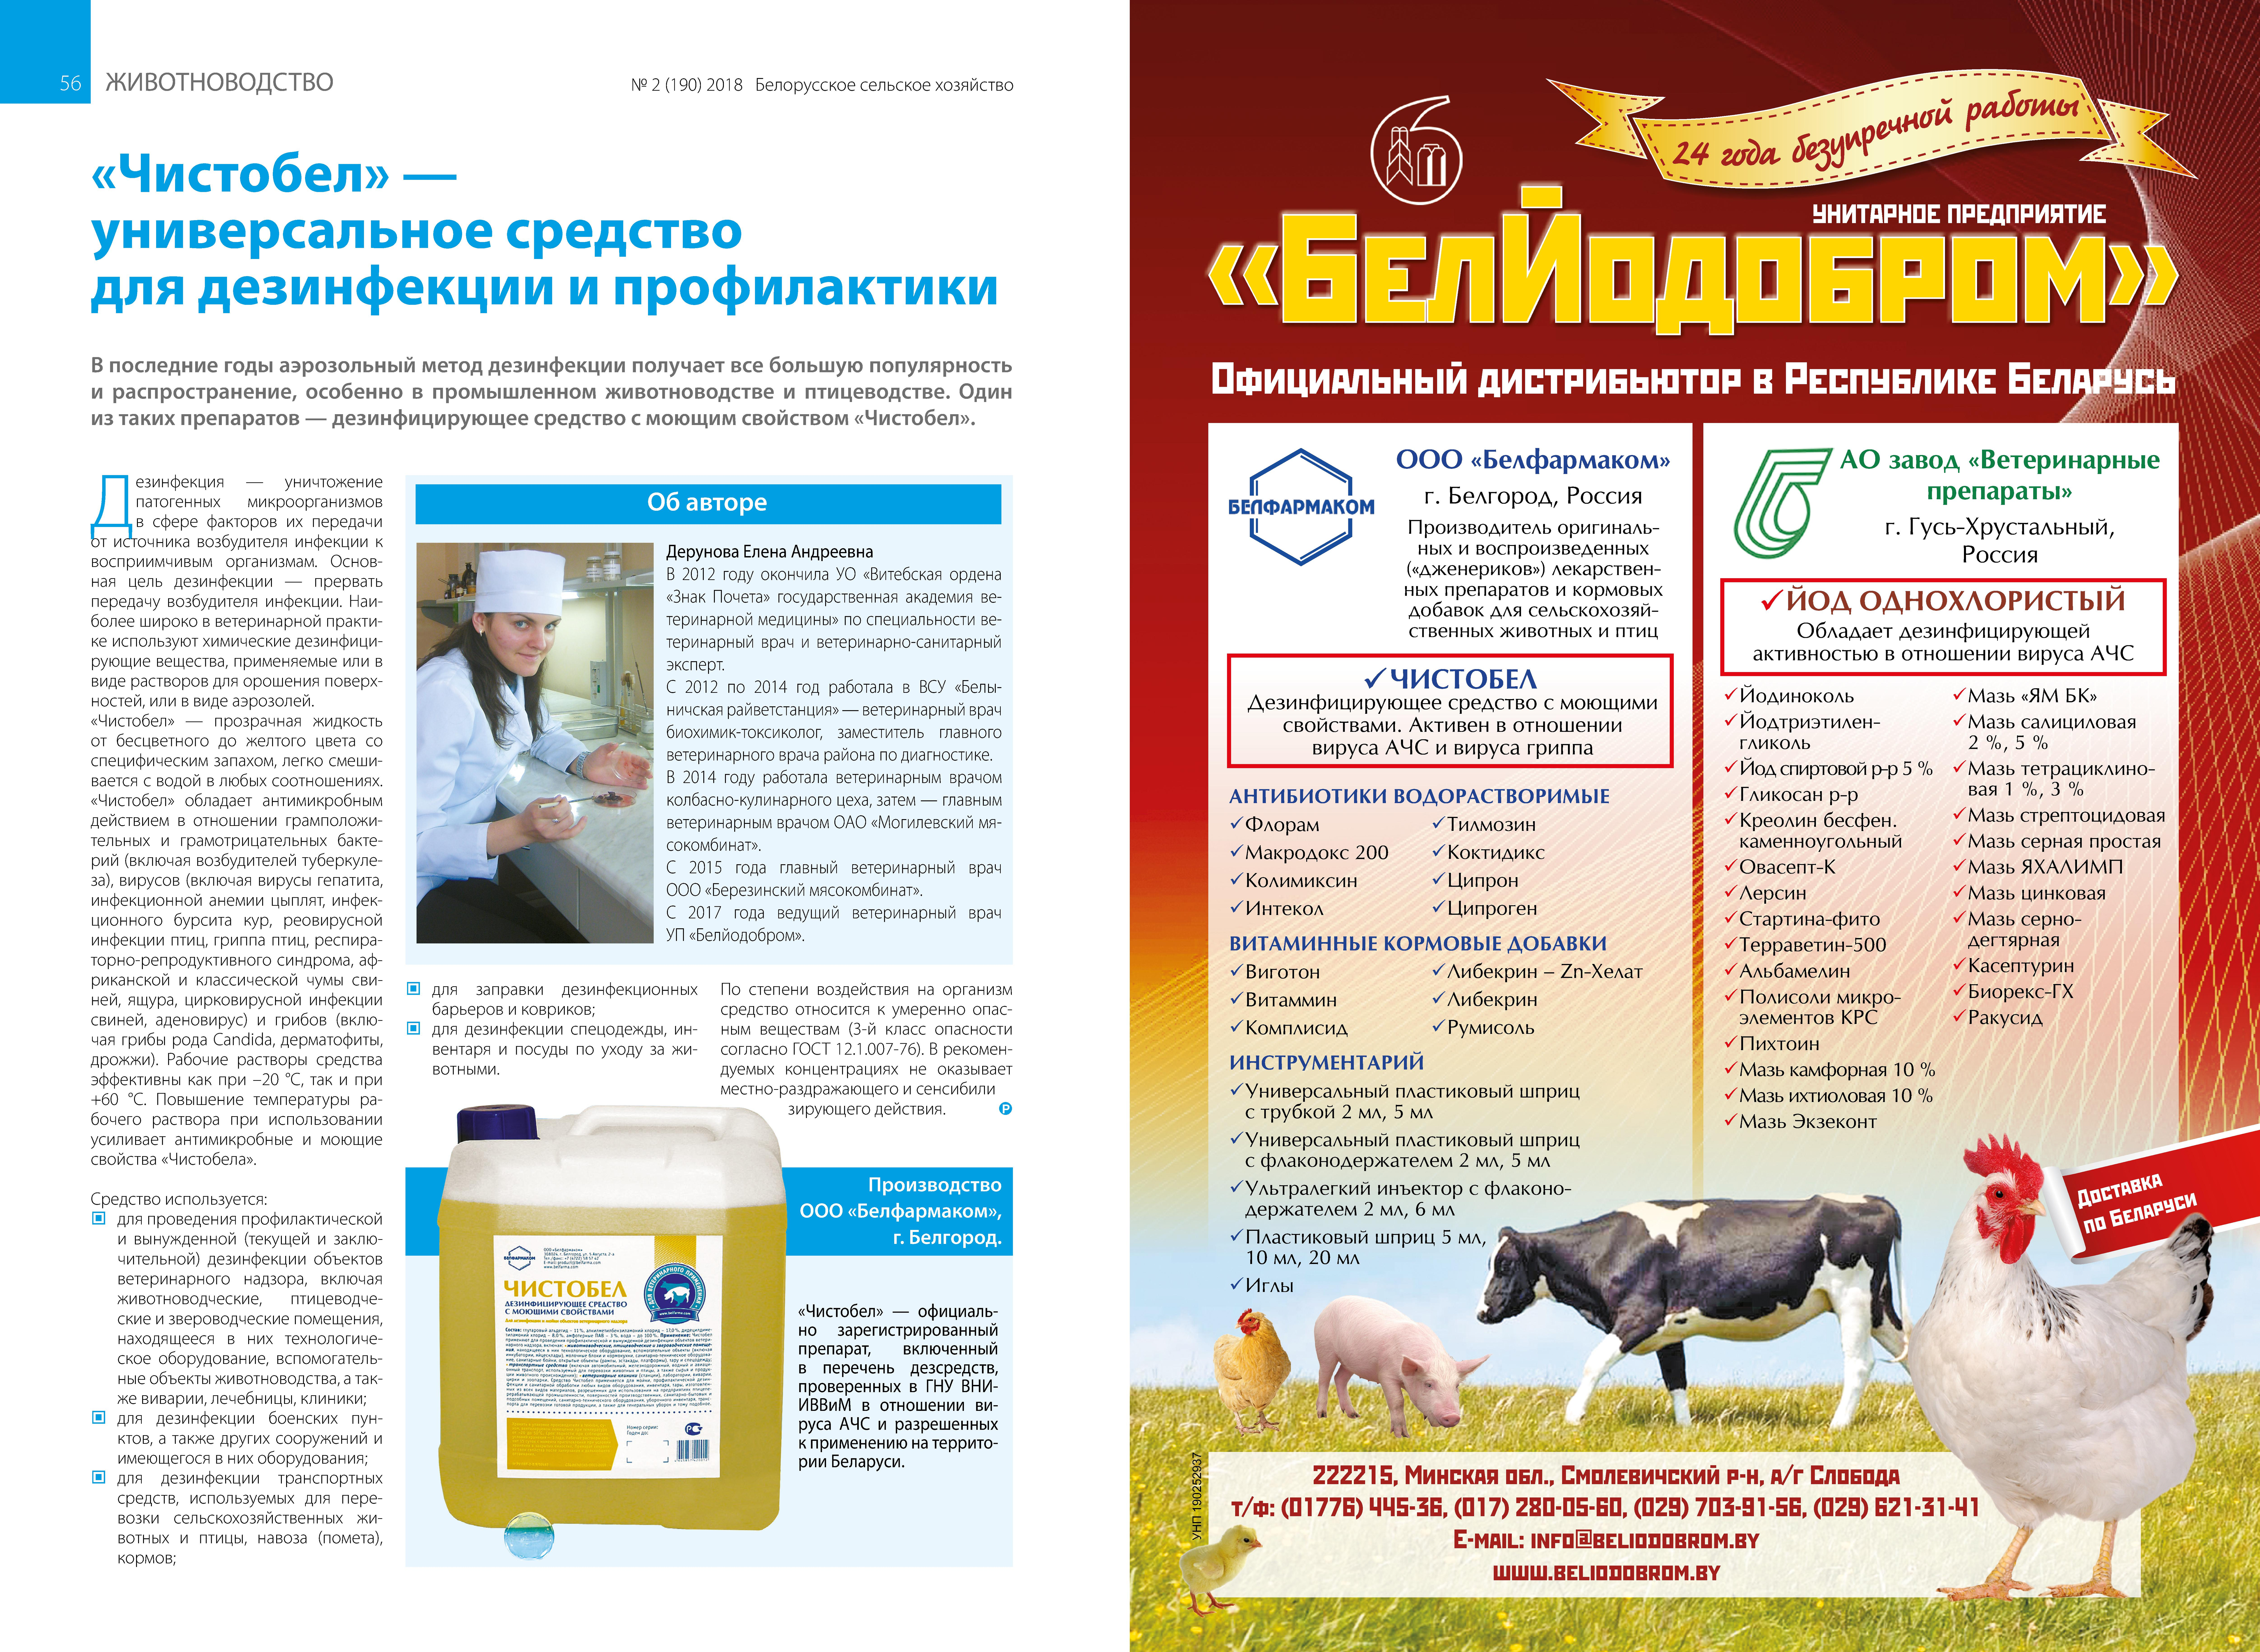 Ципроген: инструкция по применению в ветеринарии для птицы и животных